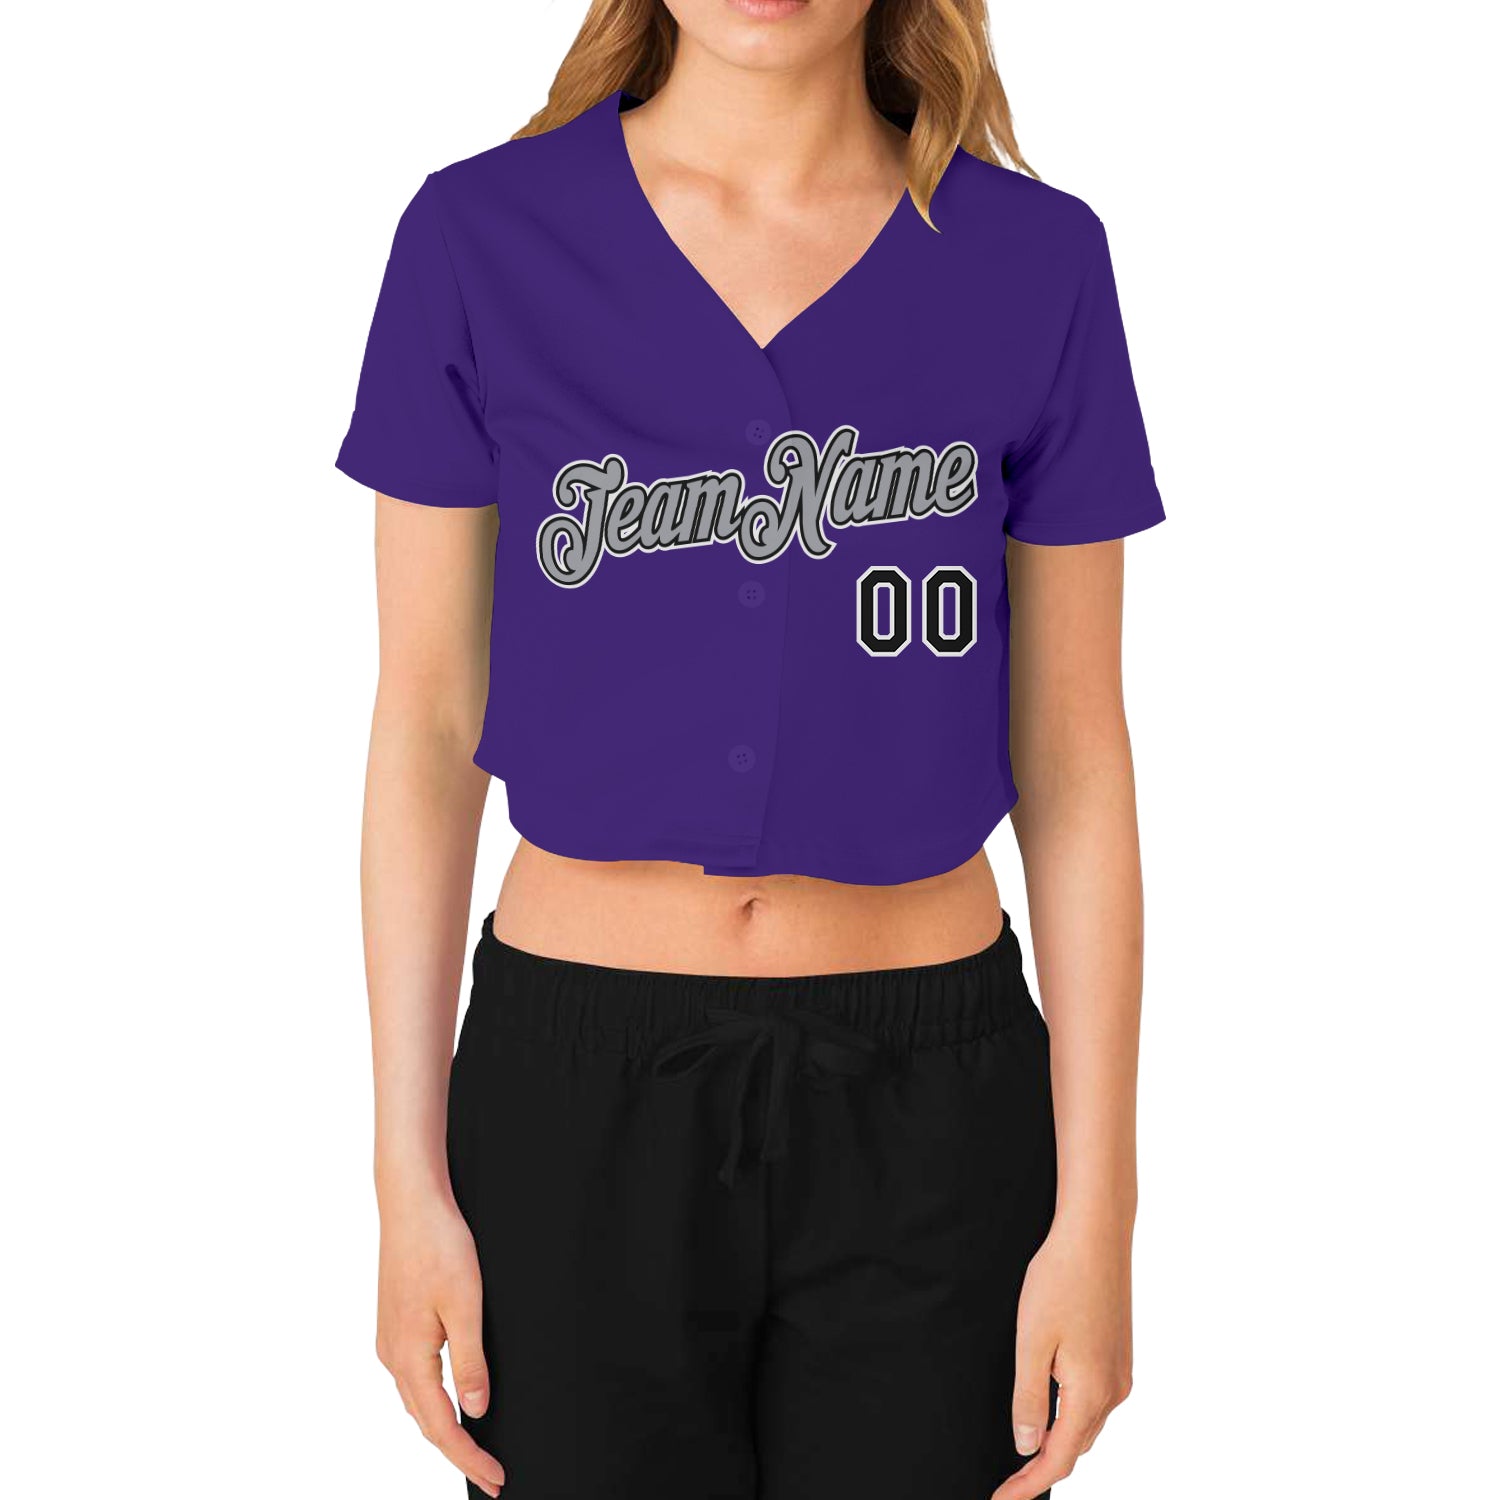 Custom Women's Purple Black White-Gray V-Neck Cropped Baseball Jersey